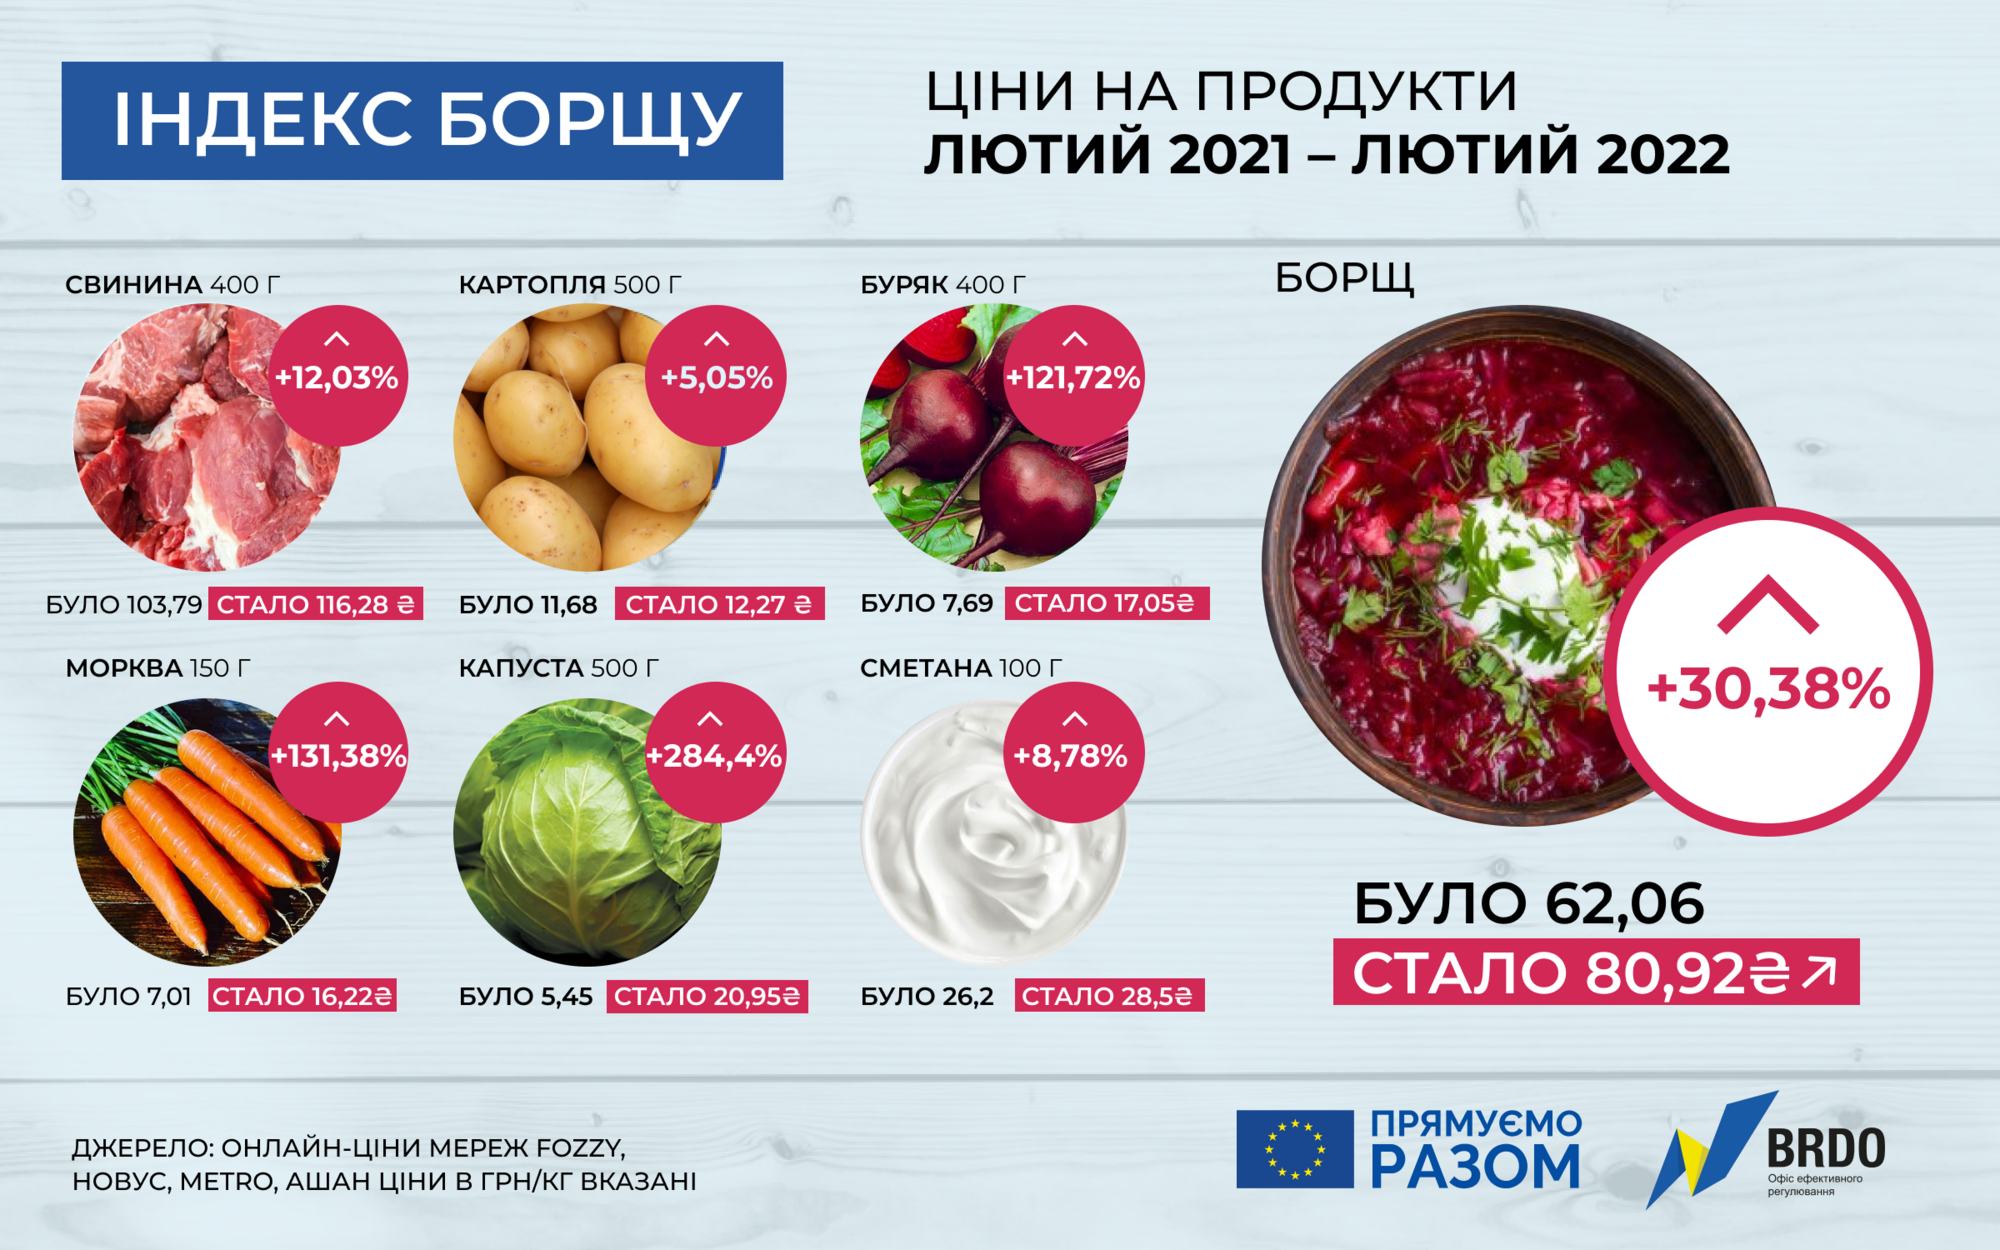 За год в Украине стоимость продуктов для борща увеличилась на 30,38%, до 80,92 грн/кастрюля